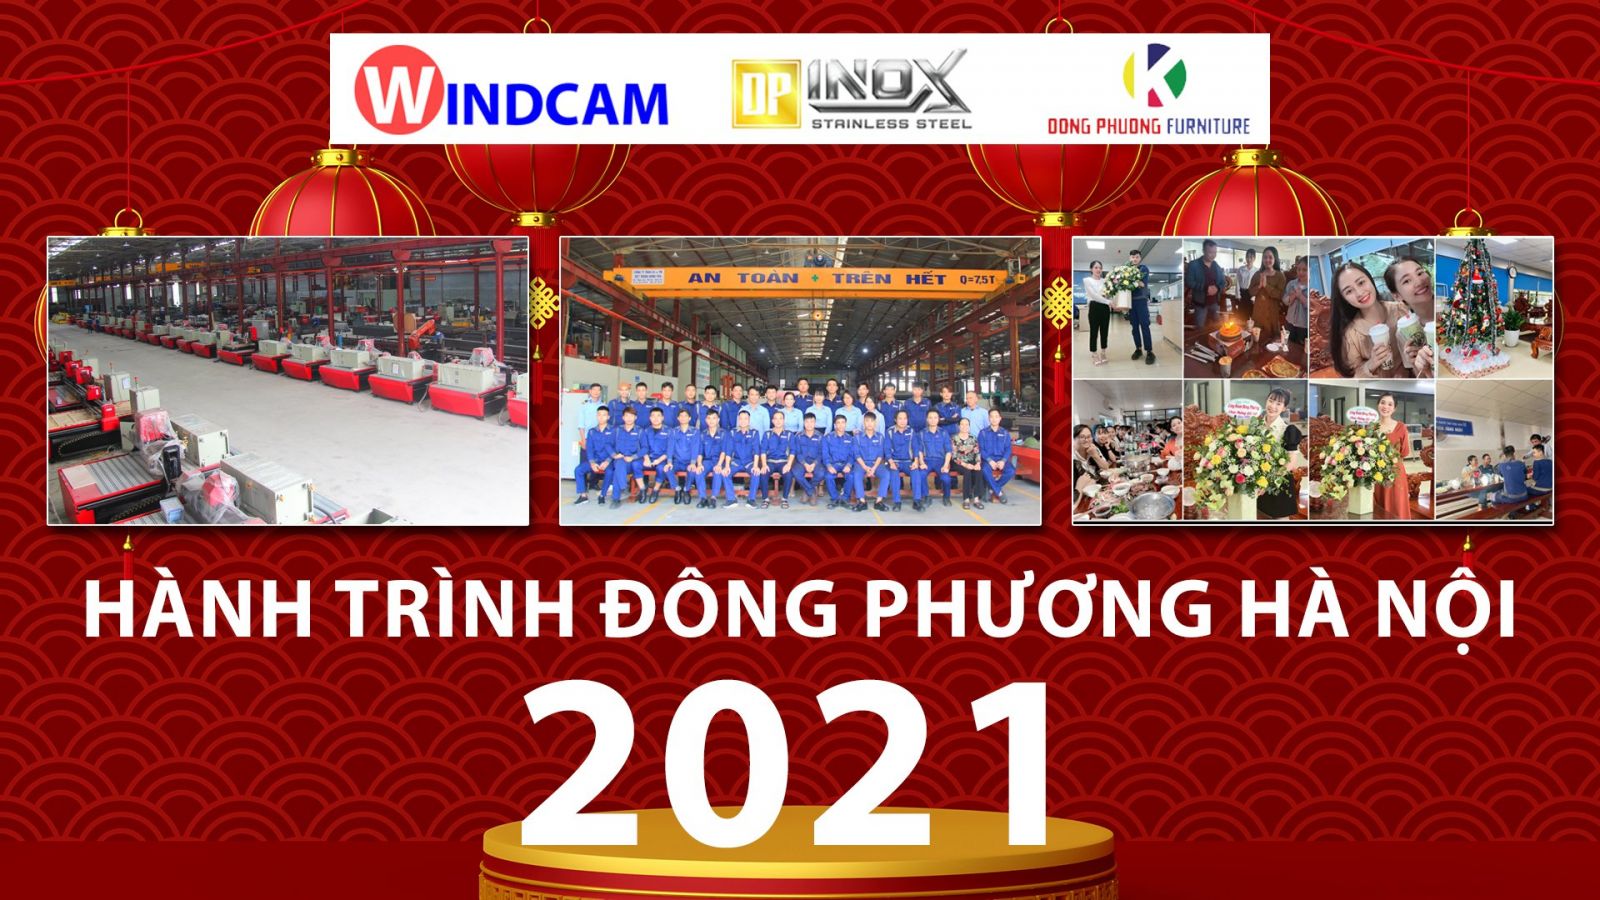 dong-phuong-ha-noi-dau-an-nam-2021